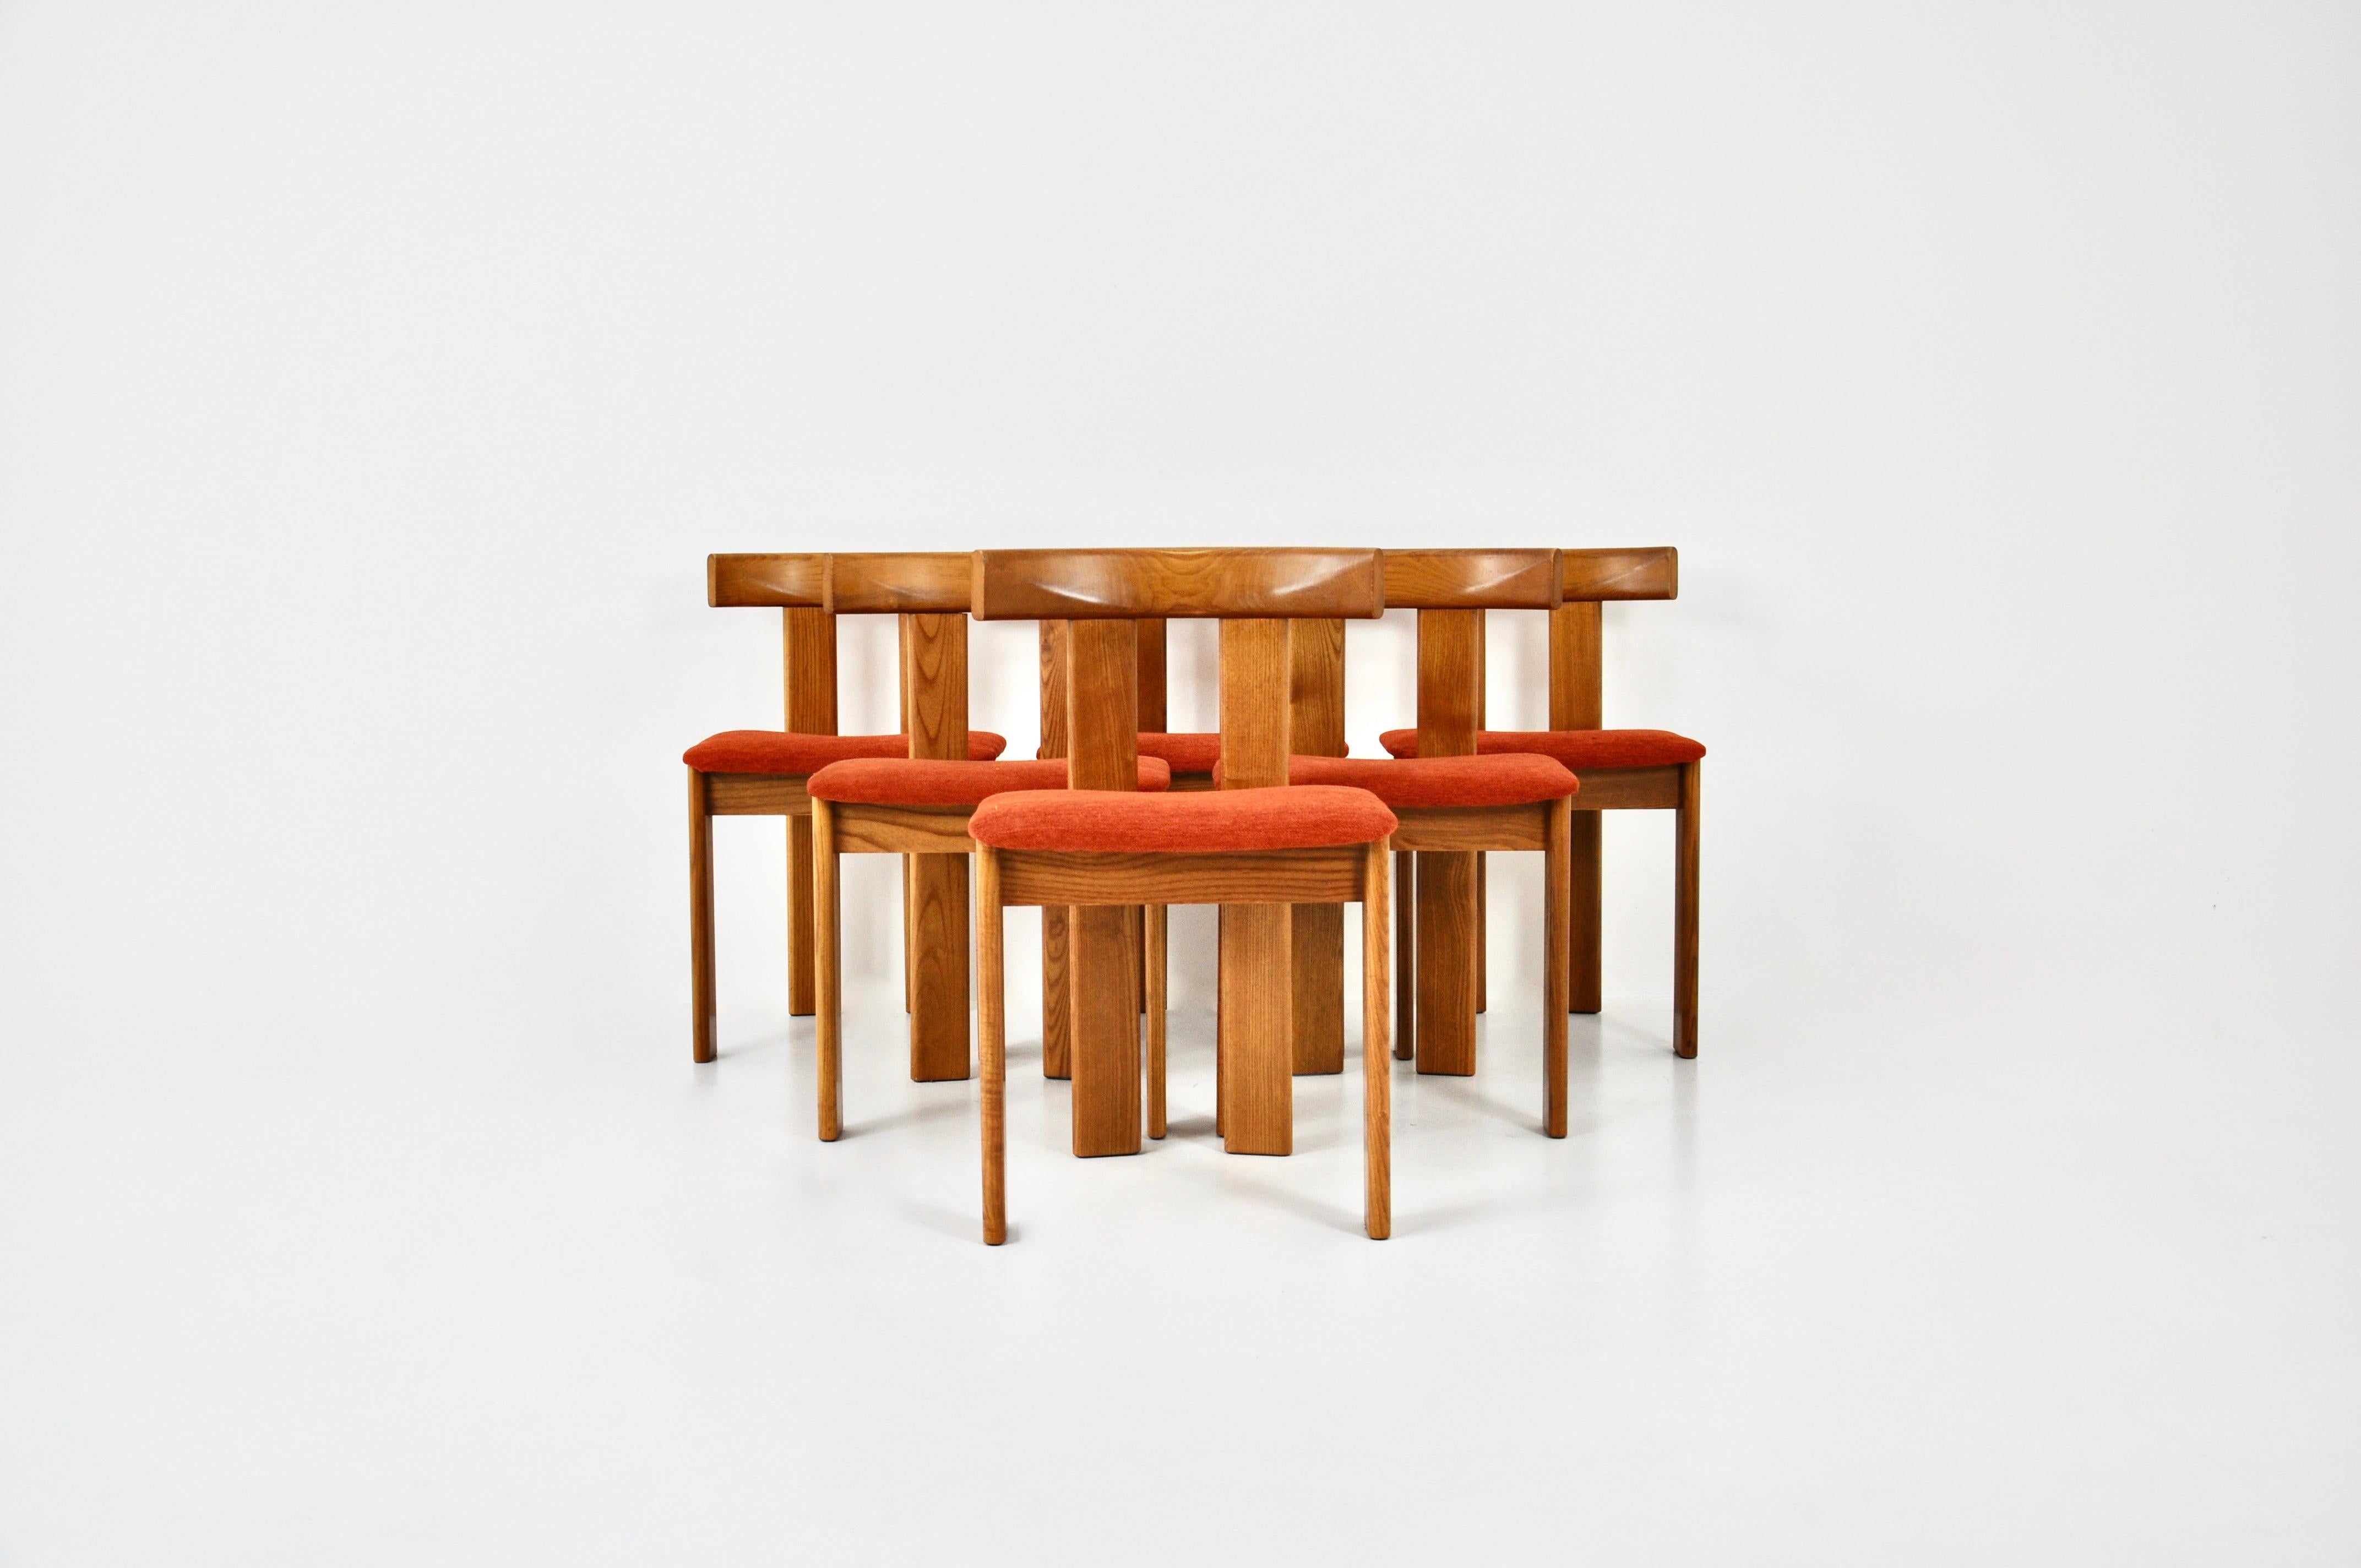 Set aus 6 Holzstühlen mit rot-orangen Stoffsitzen von Luigi Vaghi. Sitzhöhe: 45 cm. Altersbedingte Abnutzung und Alter der Stühle.